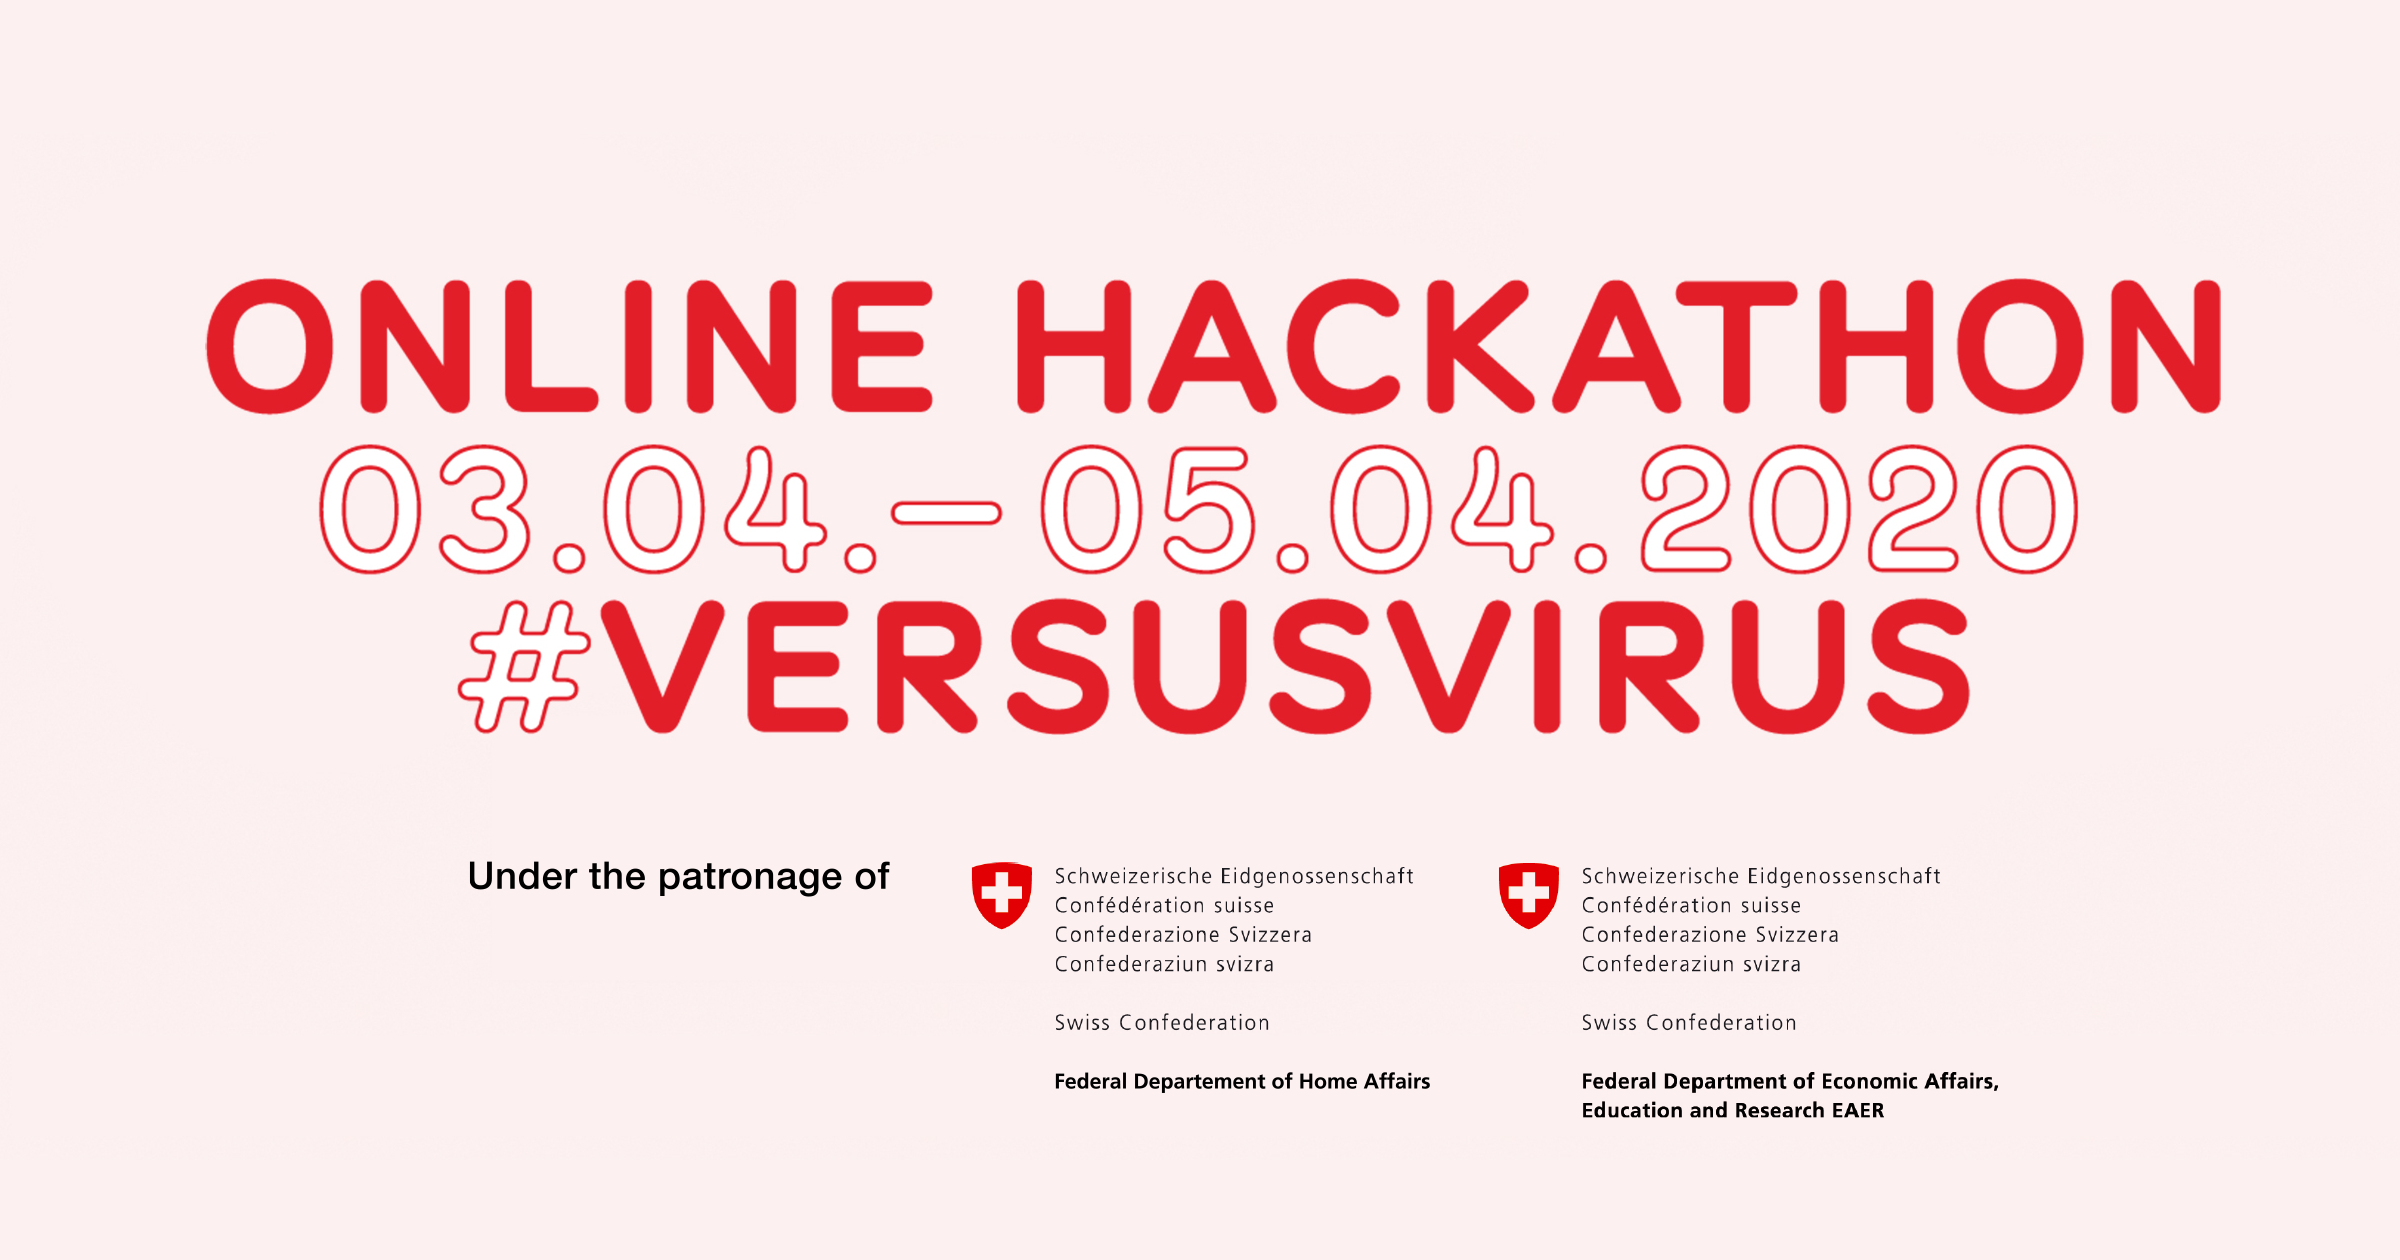 Kopie von versusvirus online hackathon banner name and date edi